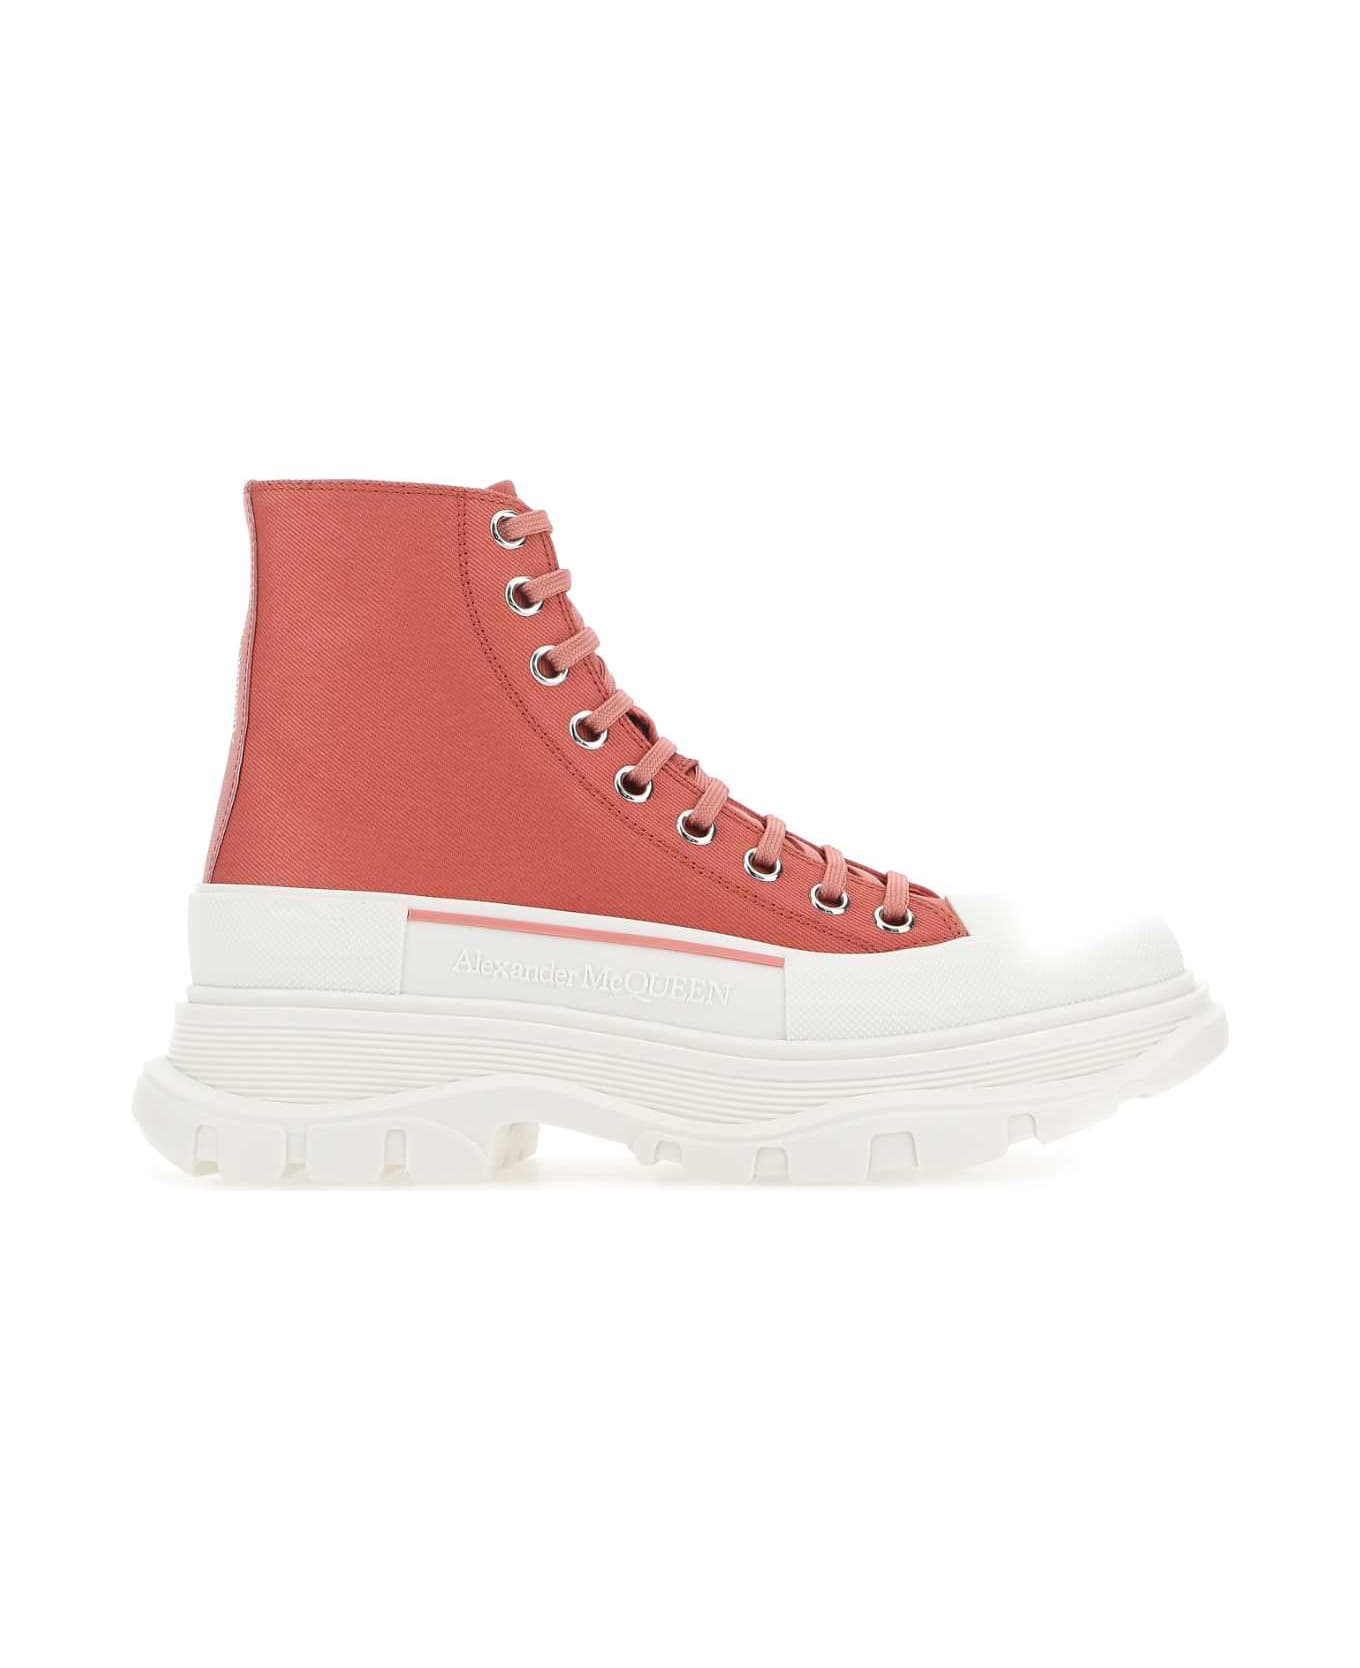 Alexander McQueen Pastel Pink Leather Tread Slick Sneakers - 5542